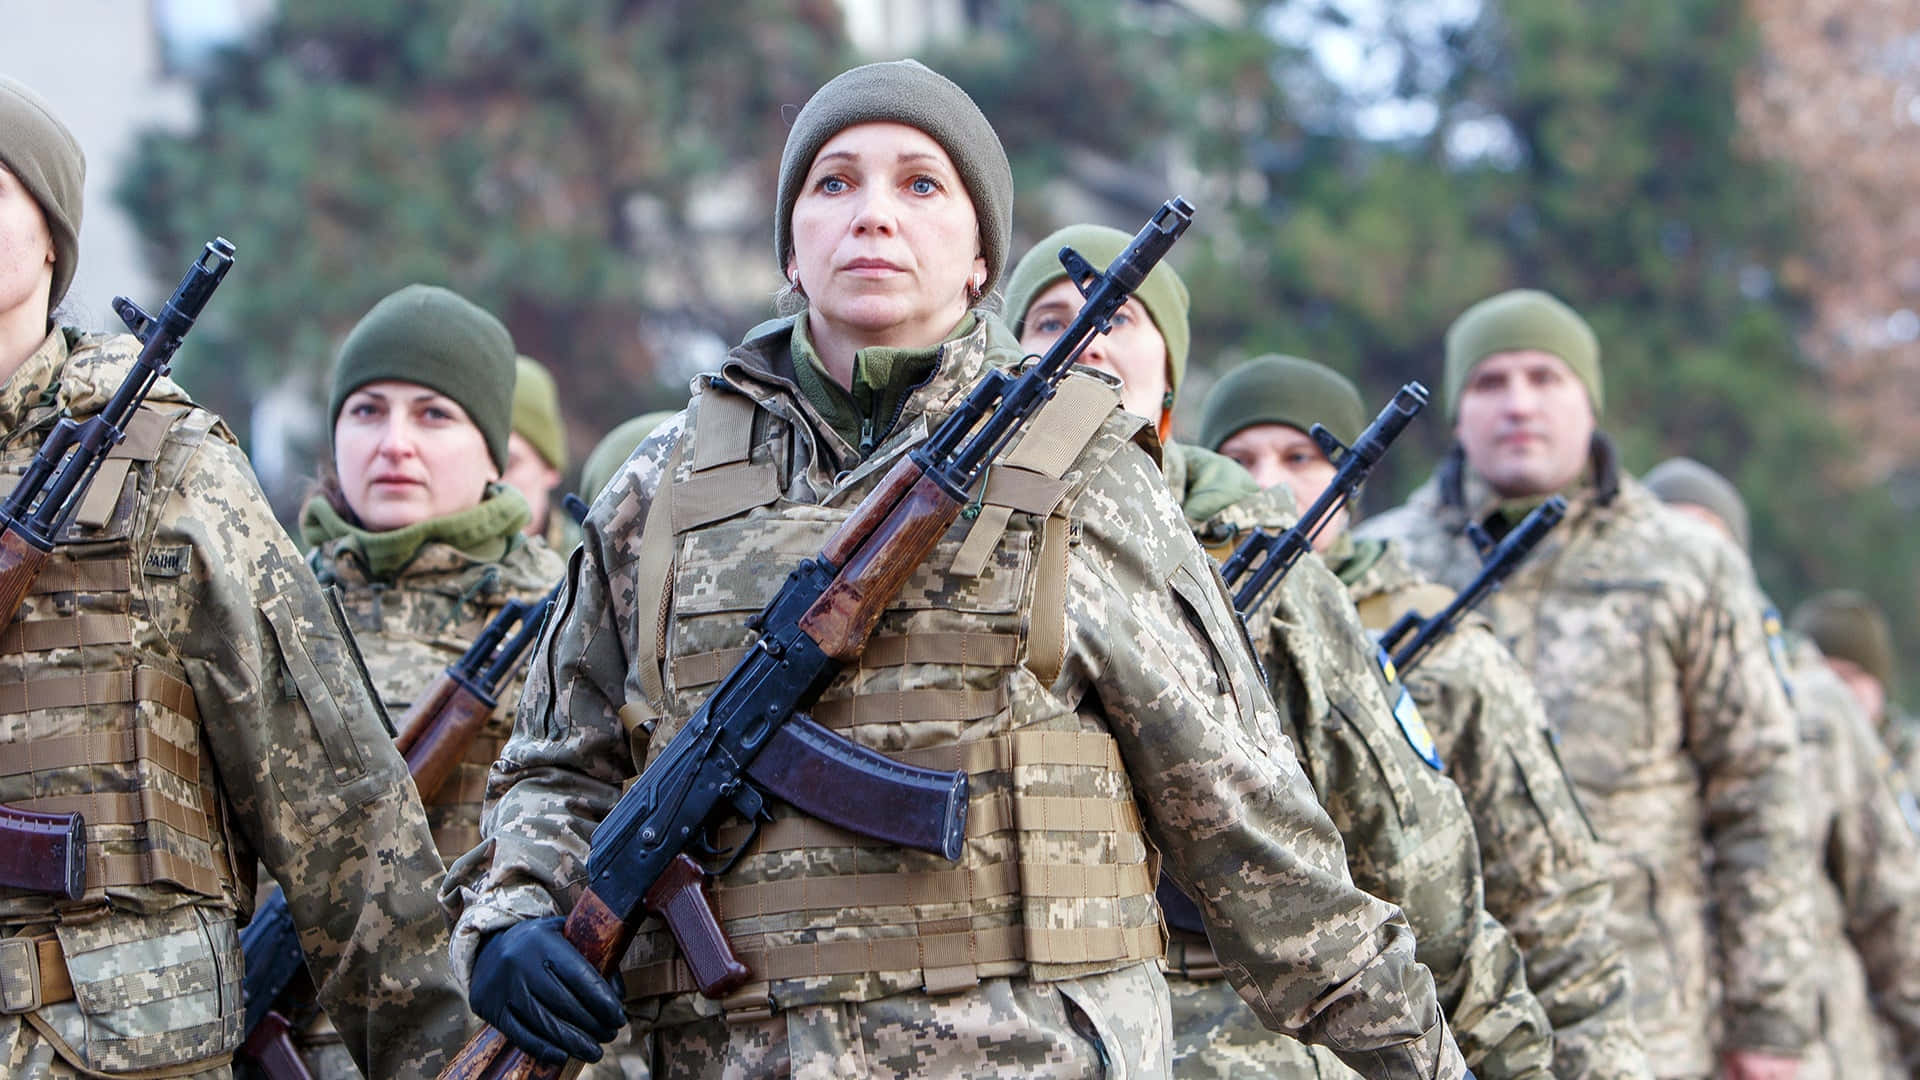 Ukrainischearmee-soldaten In Uniform